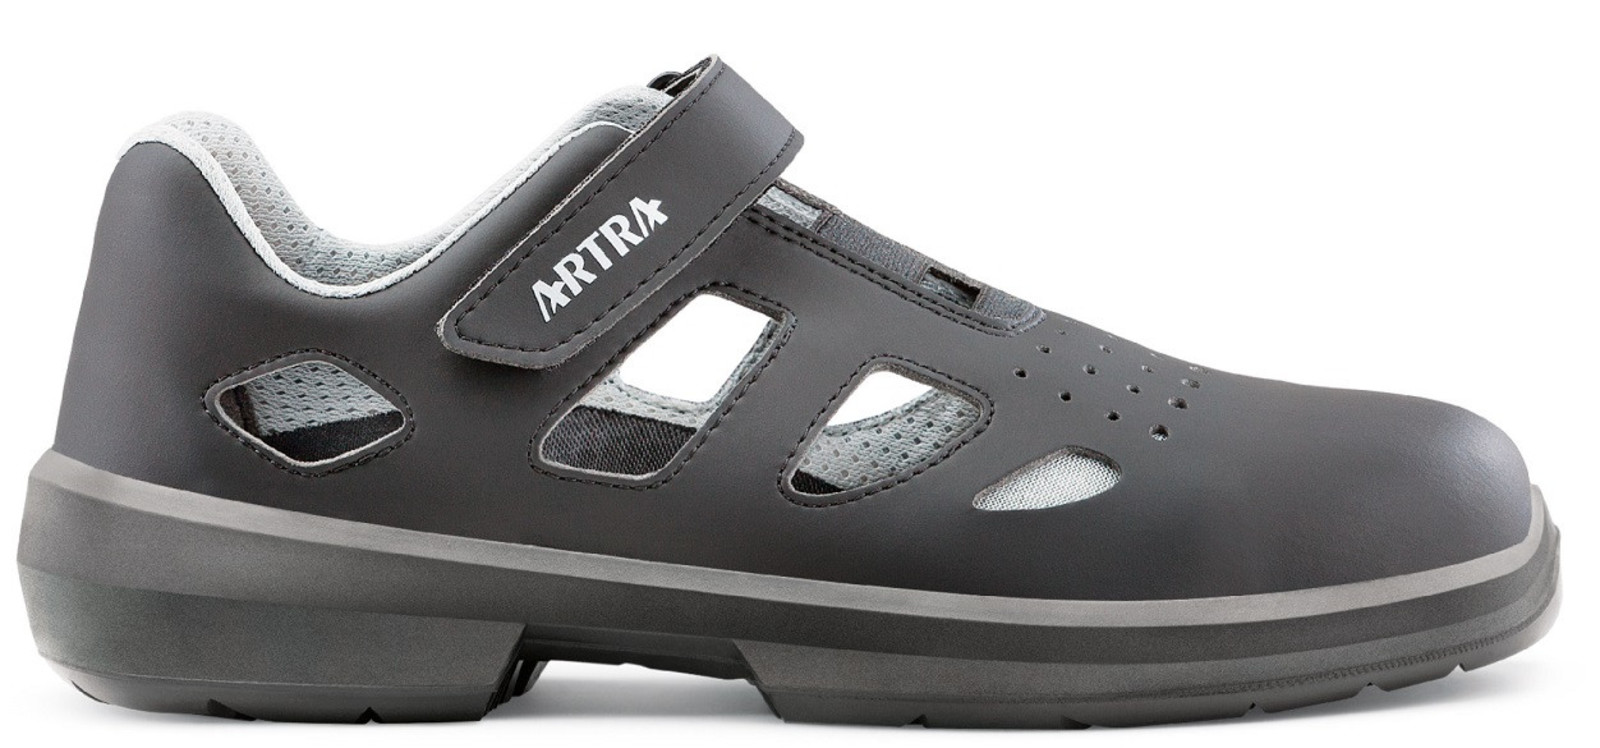 Bezpečnostné sandále Artra Ario 801 661460 S1P - veľkosť: 38, farba: čierna